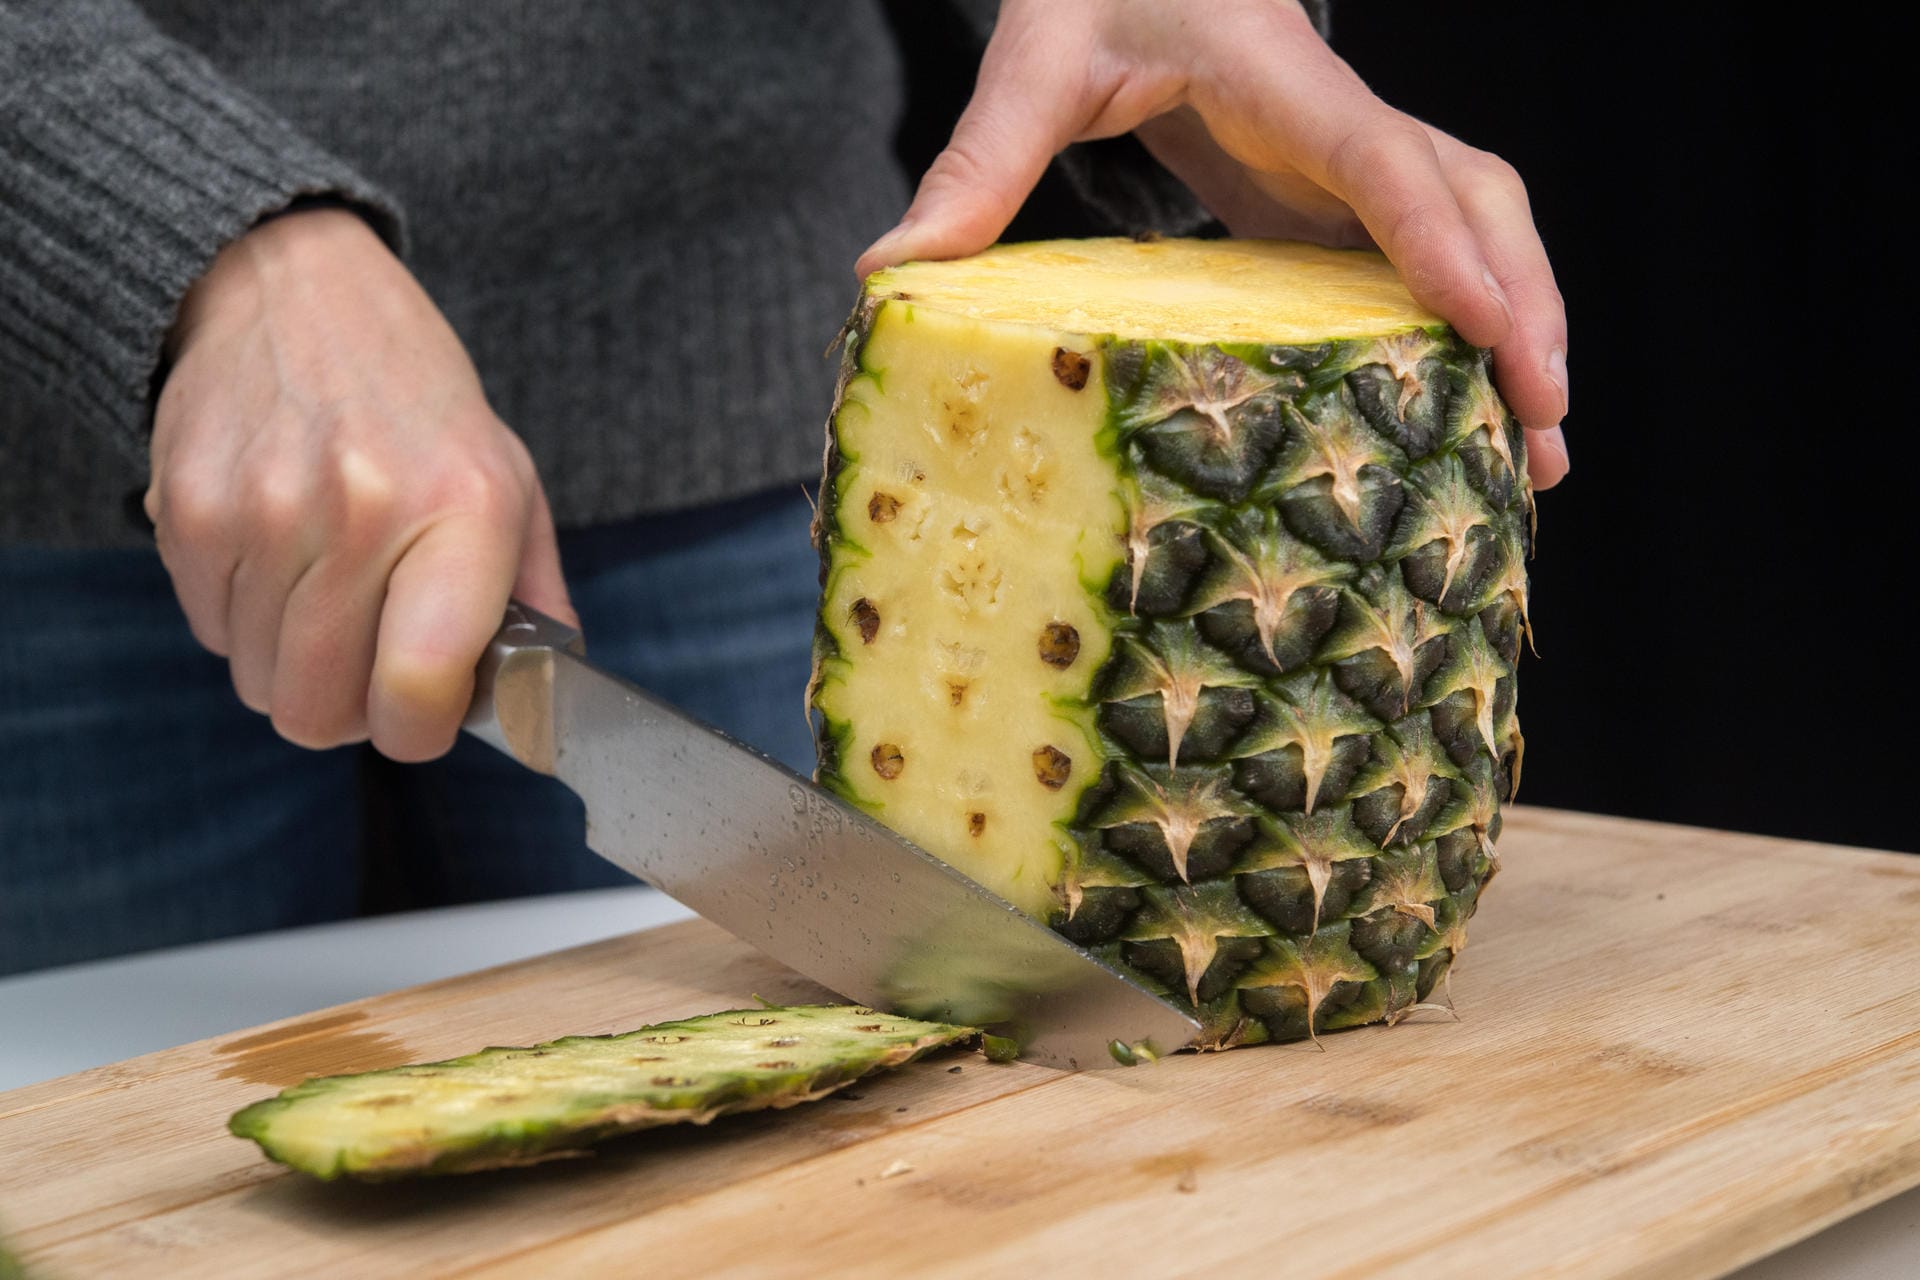 Ananas richtig aufschneiden: Schritt 3 – Die Frucht aufrecht auf das Brett stellen. Dann mit einem Messer der Wölbung folgend die Schale von oben nach unten abschneiden.